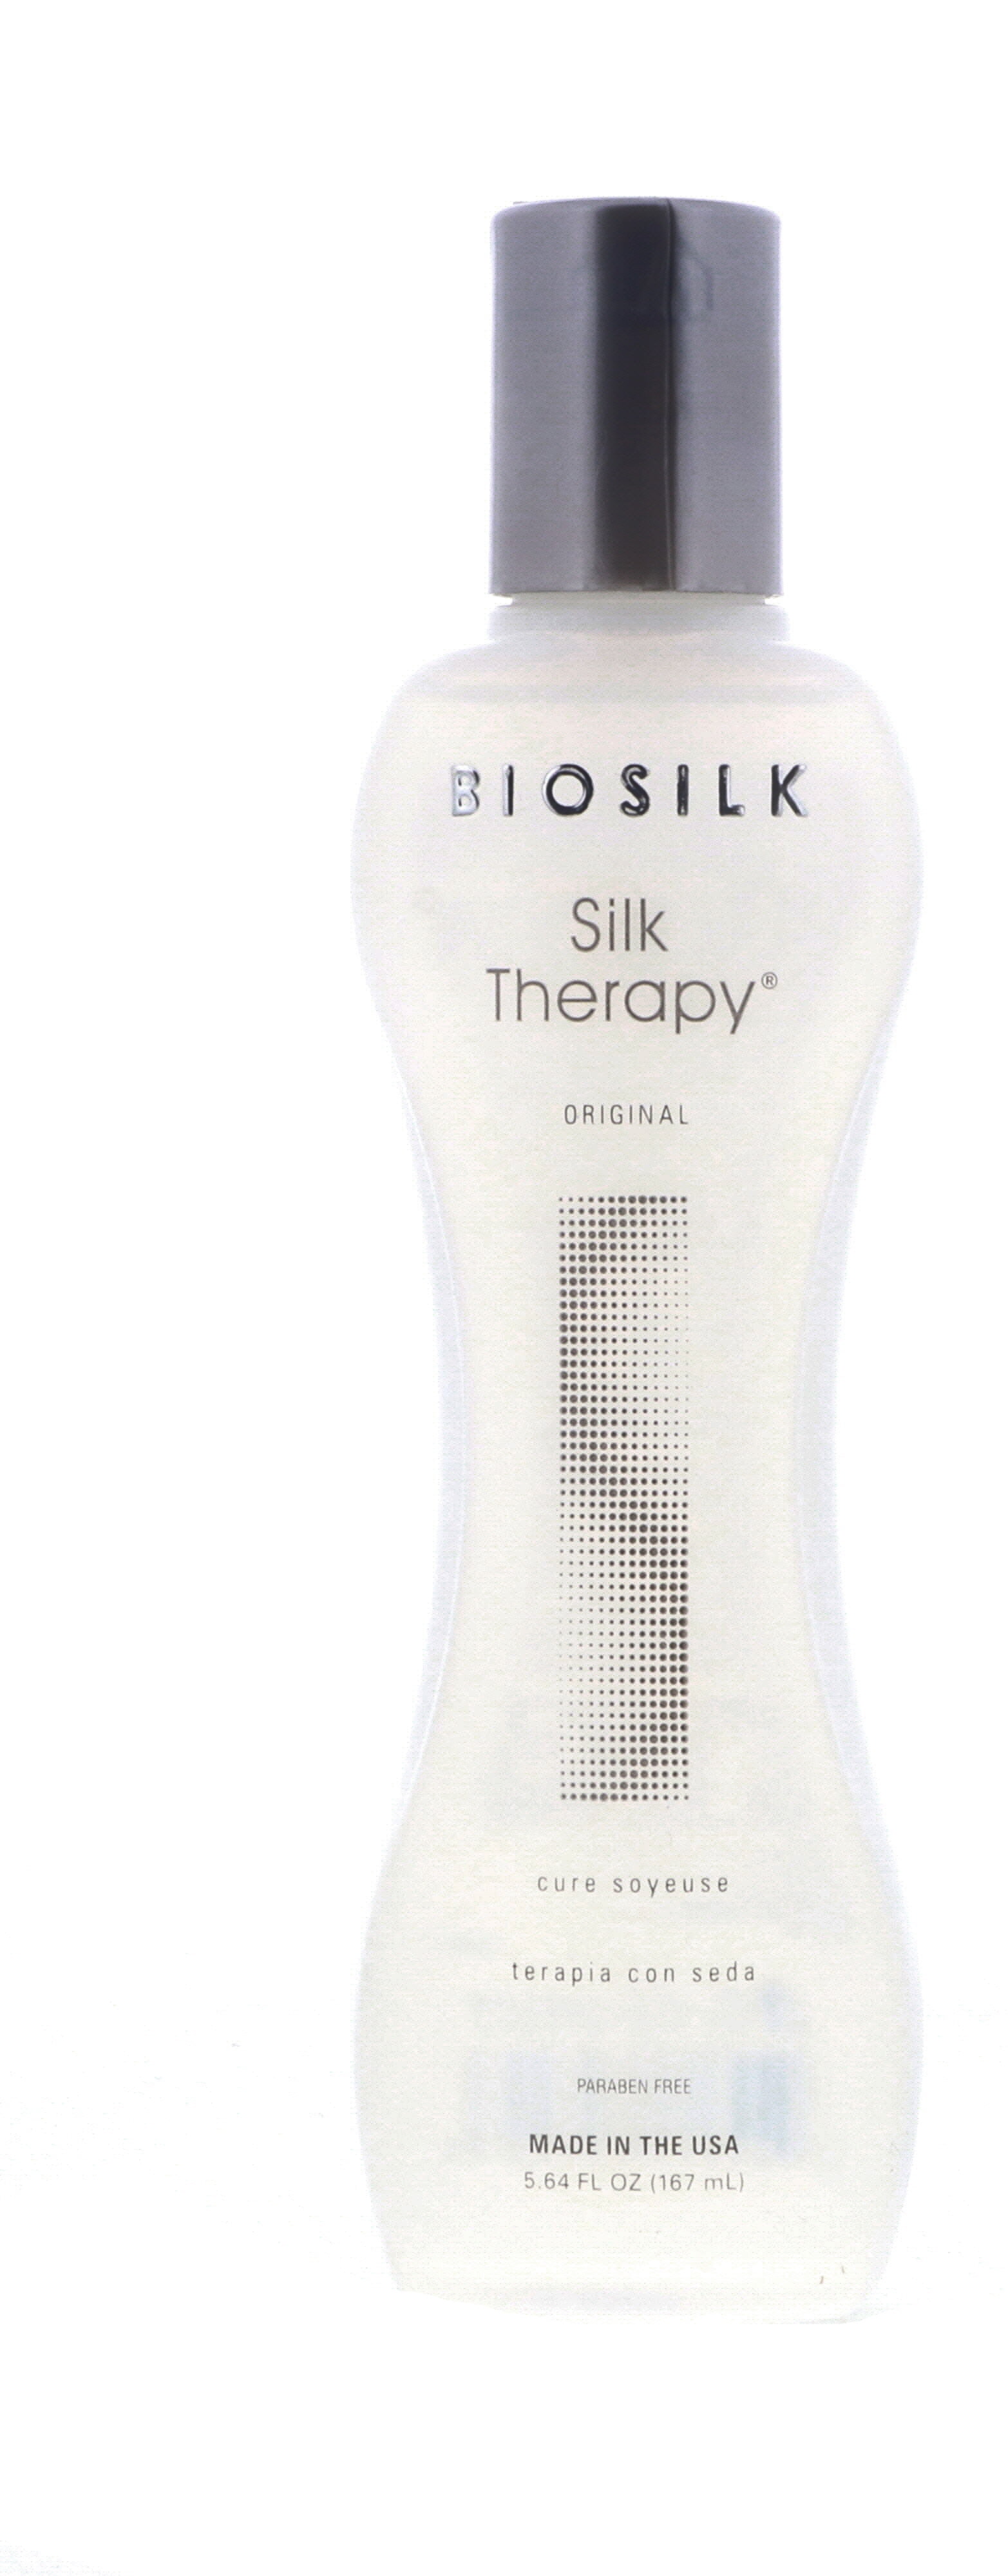 BioSilk Silk Therapy, Original, 5.64 oz 2 Pack